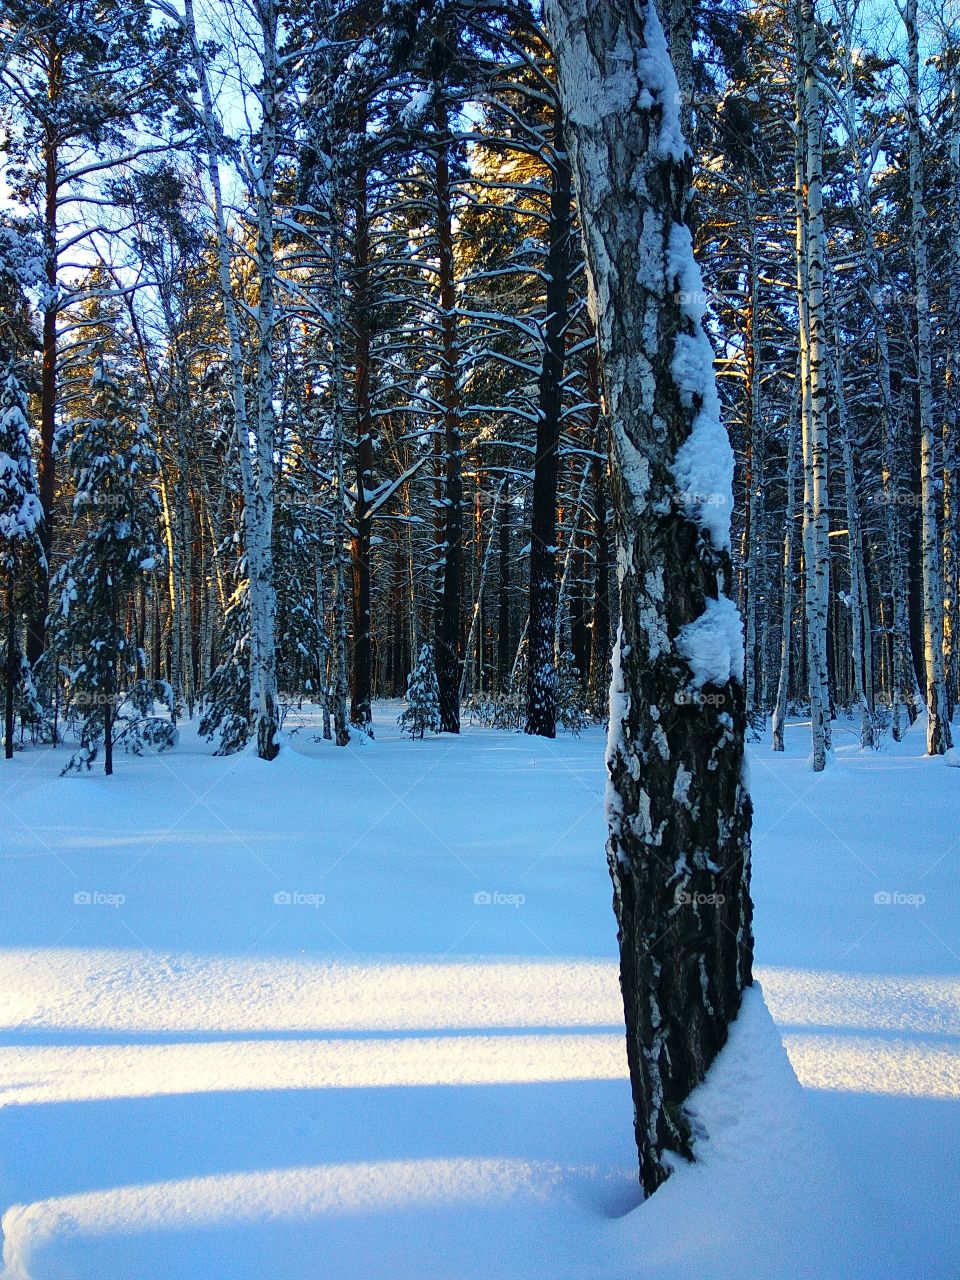 Winter wilderness at dawn